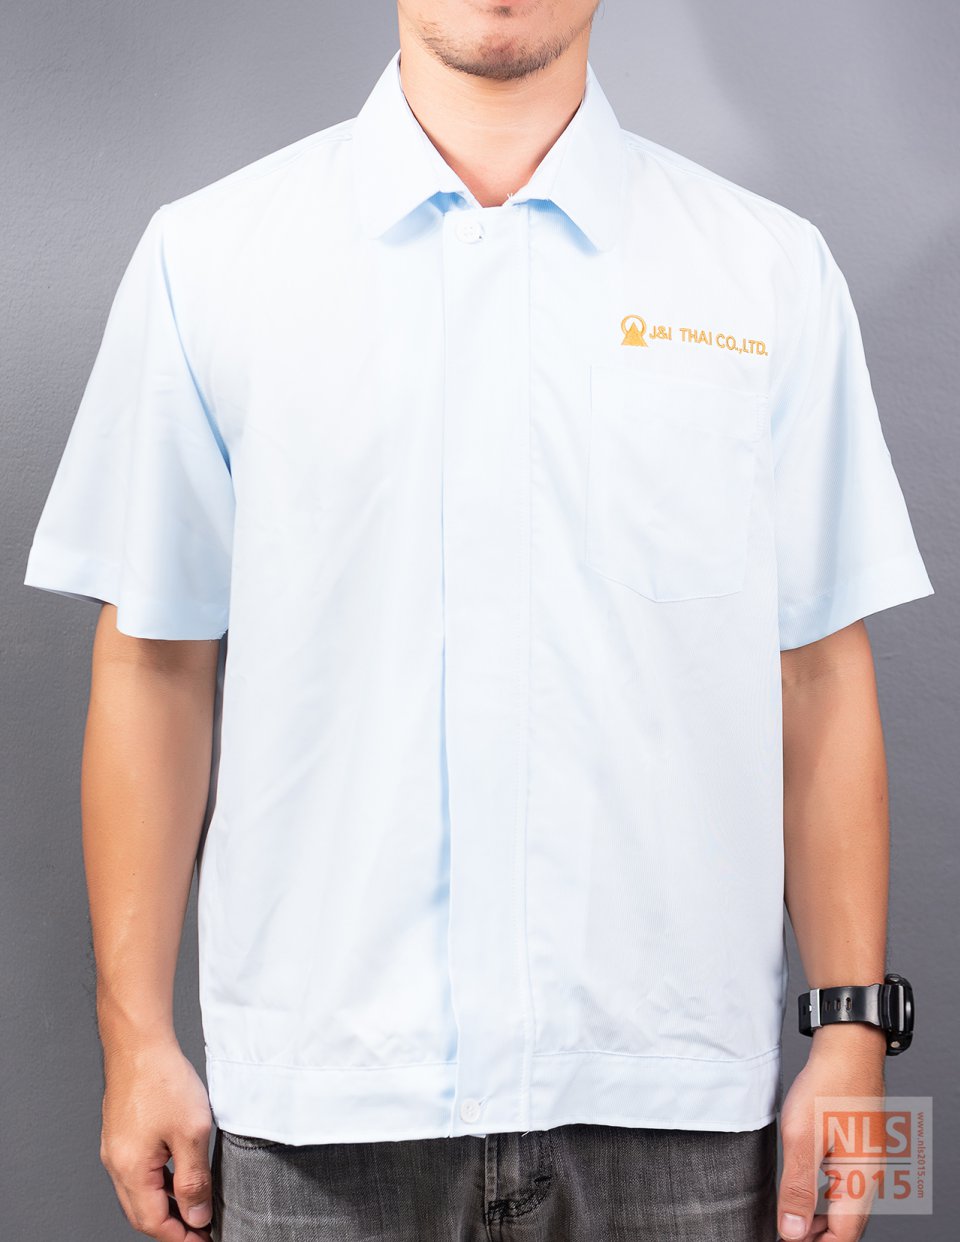 ตัวอย่างเสื้อช้อปพนักงาน J&I THAI CO.,LTD / นลินสิริ 2015 จำกัด รับผลิตเสื้อช้อปพนักงานพร้อมปักโลโก้รูปที่ 